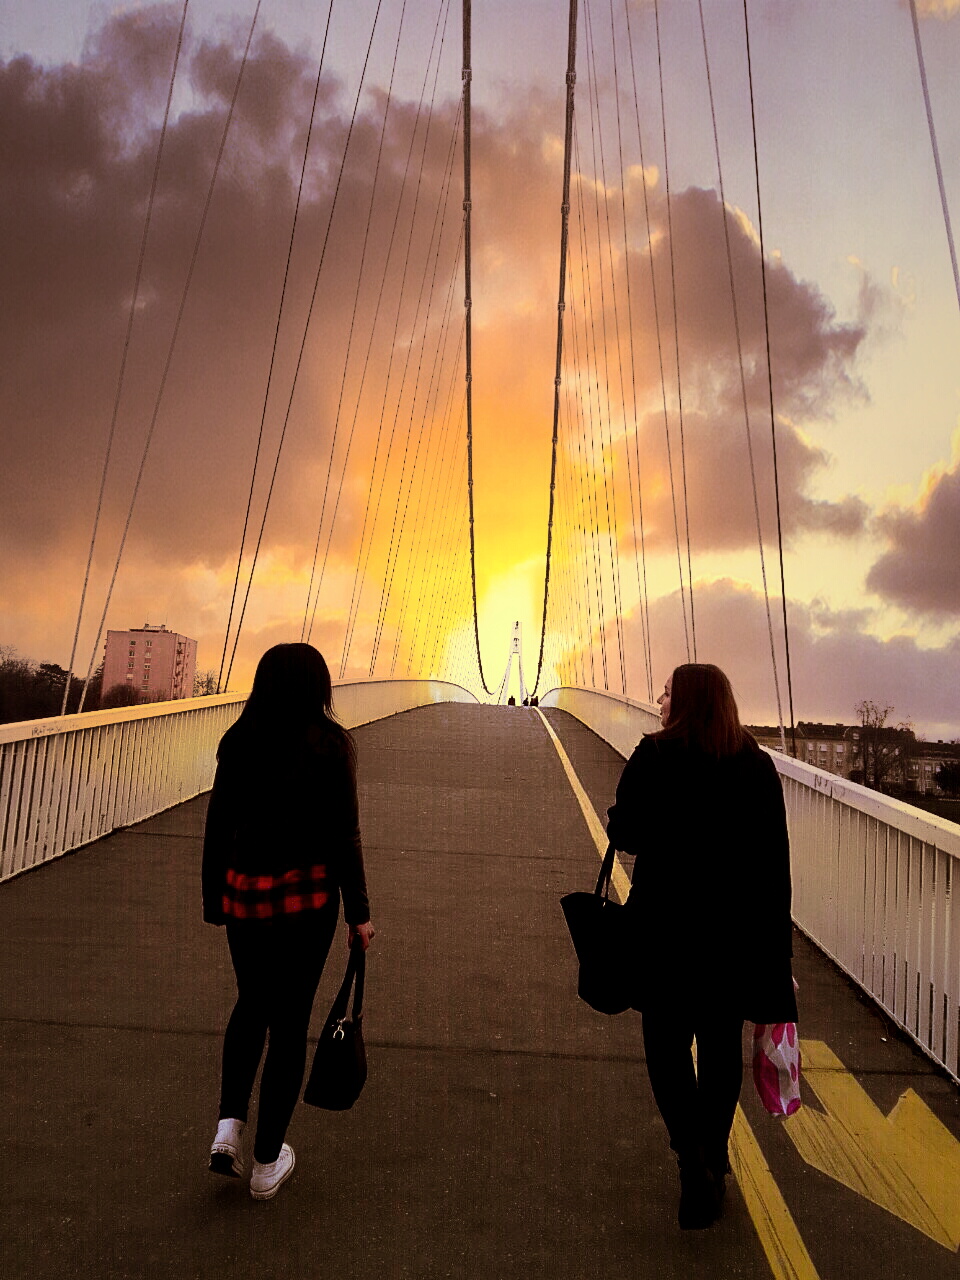 etnja mostom

Foto: Ivana ulc

Kljune rijei: most drava zalazak sunca setnja mostom